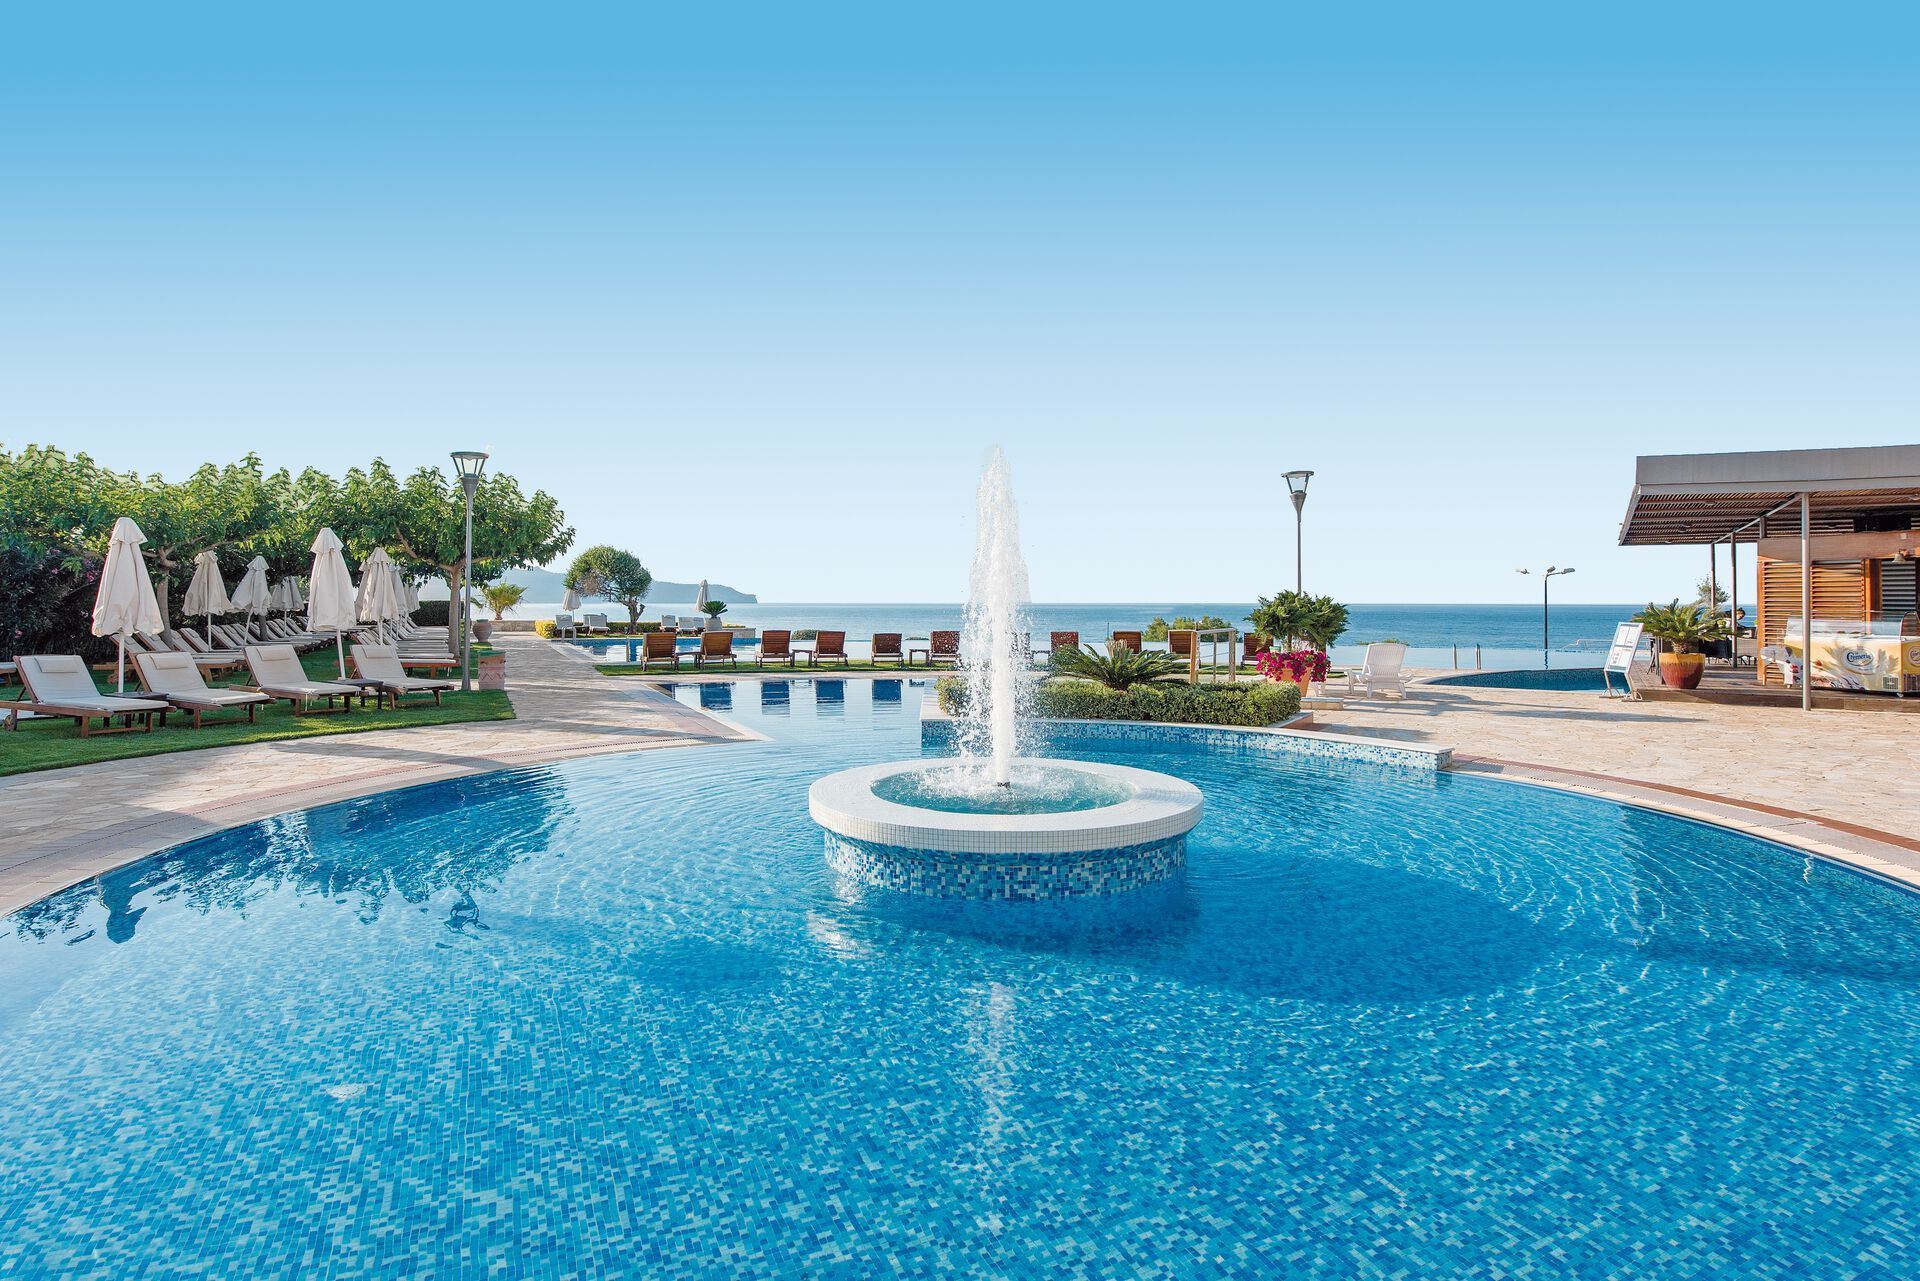 Crète - La Canée - Grèce - Iles grecques - Hôtel Cretan Dream Resort and Spa 5*